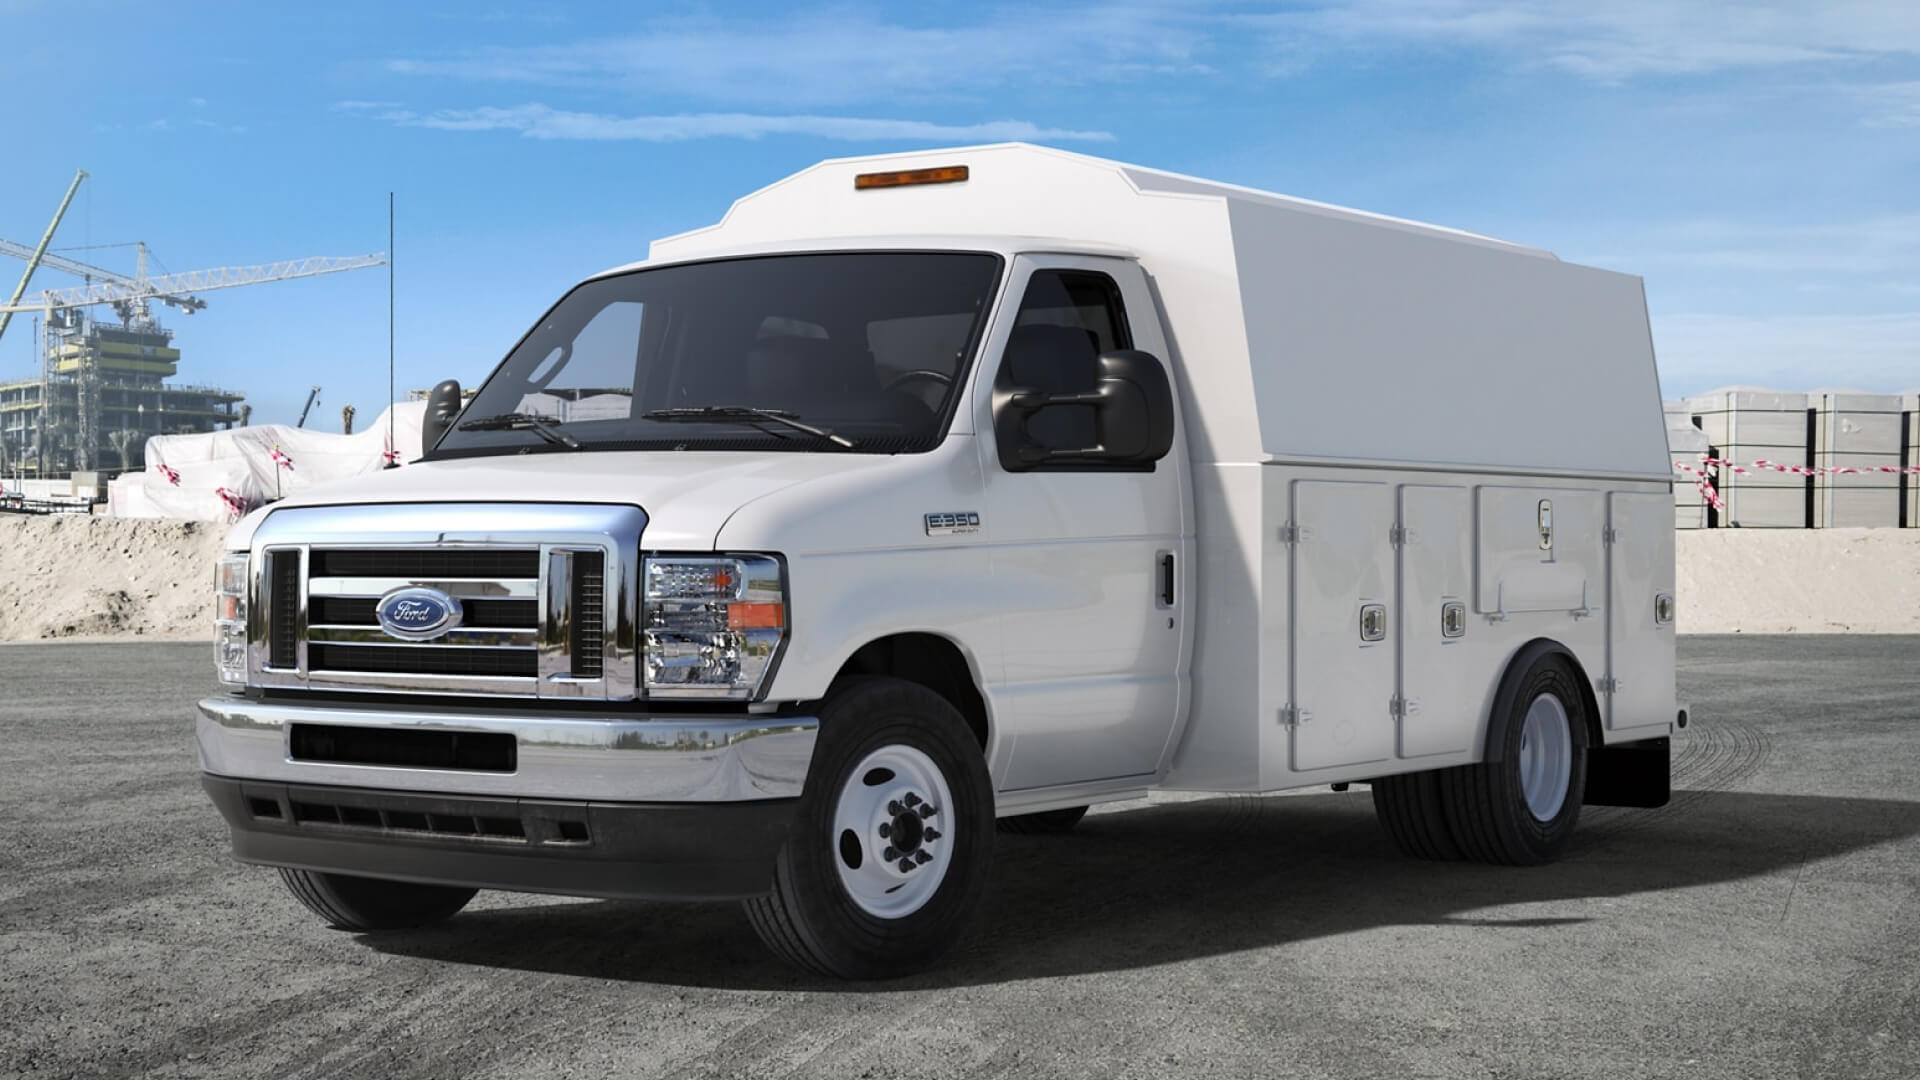 Découvrez notre gamme de véhicules commerciaux : Ford Transit Connect